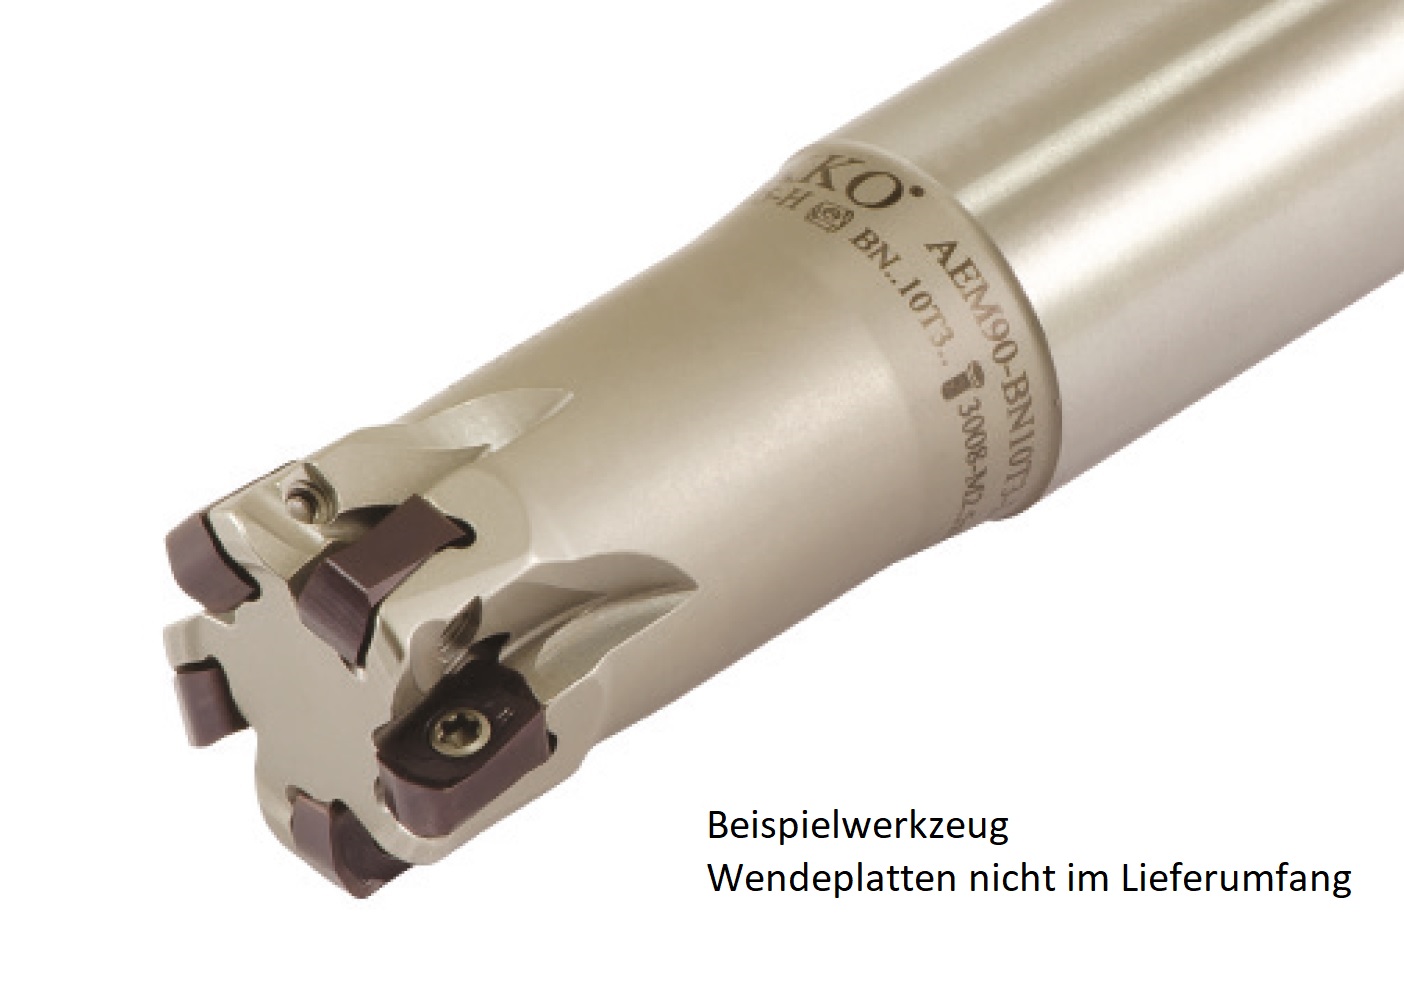 AKKO-Hochvorschub-Schaftfräser ø 32 mm für Wendeplatten, kompatibel mit Pramet BNGX 10T3....
Schaft-ø 32, mit Innenkühlung, Z=5